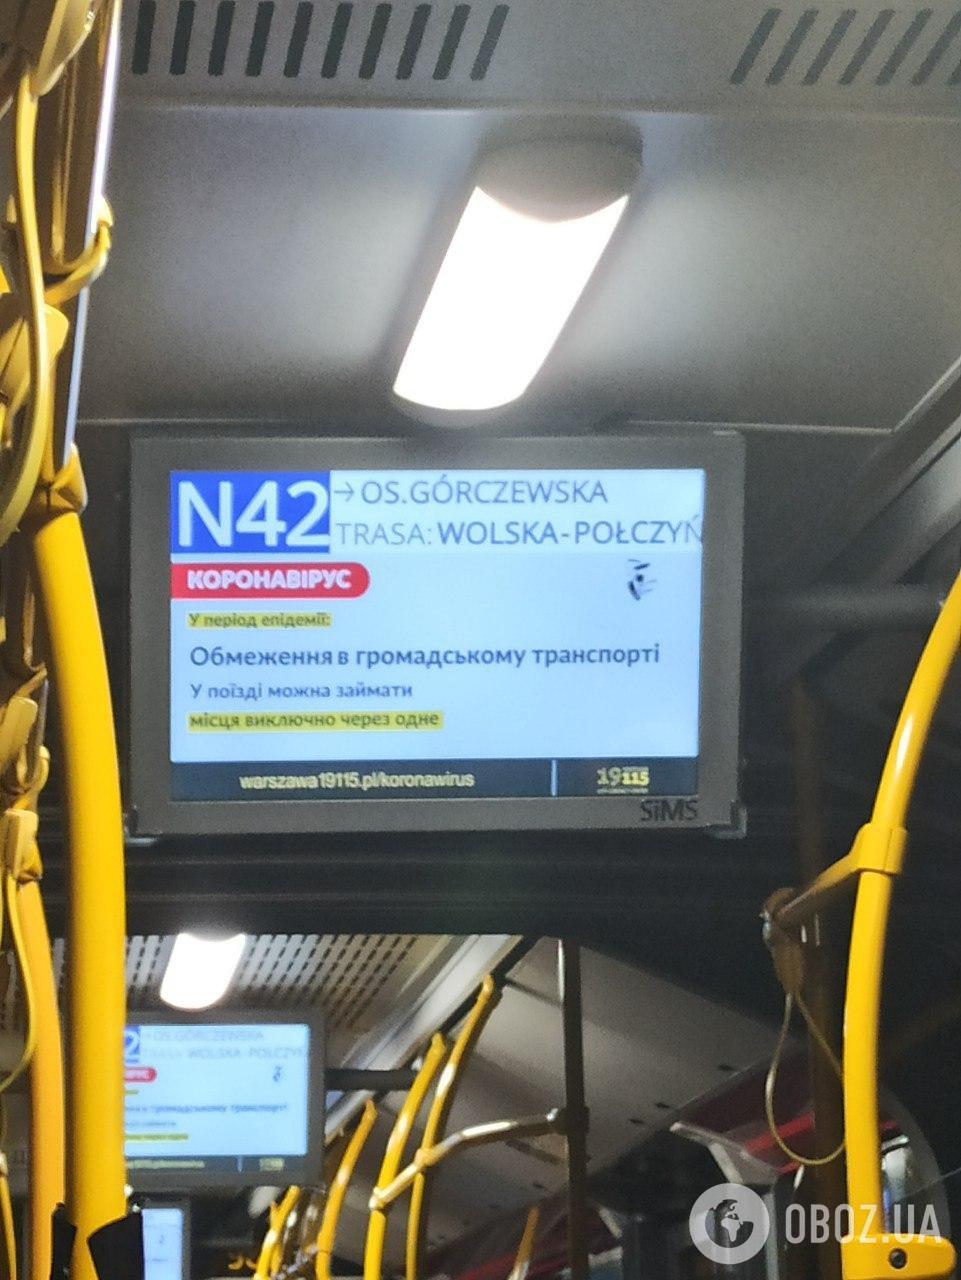 В общественном транспорте Варшавы транслируют объявления на украинском языке